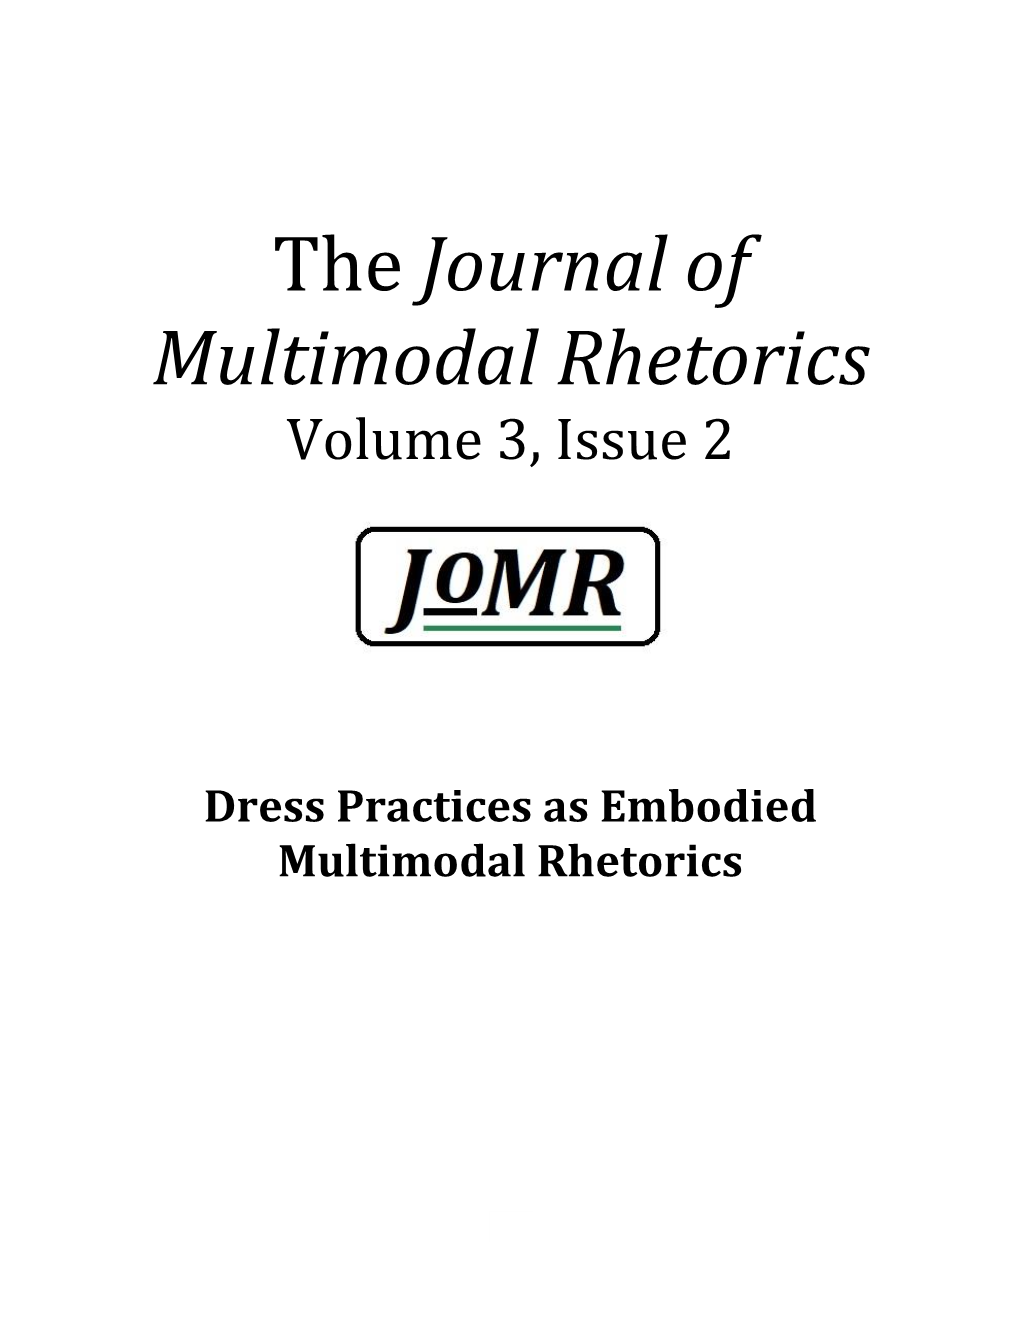 The Journal of Multimodal Rhetorics Volume 3, Issue 2